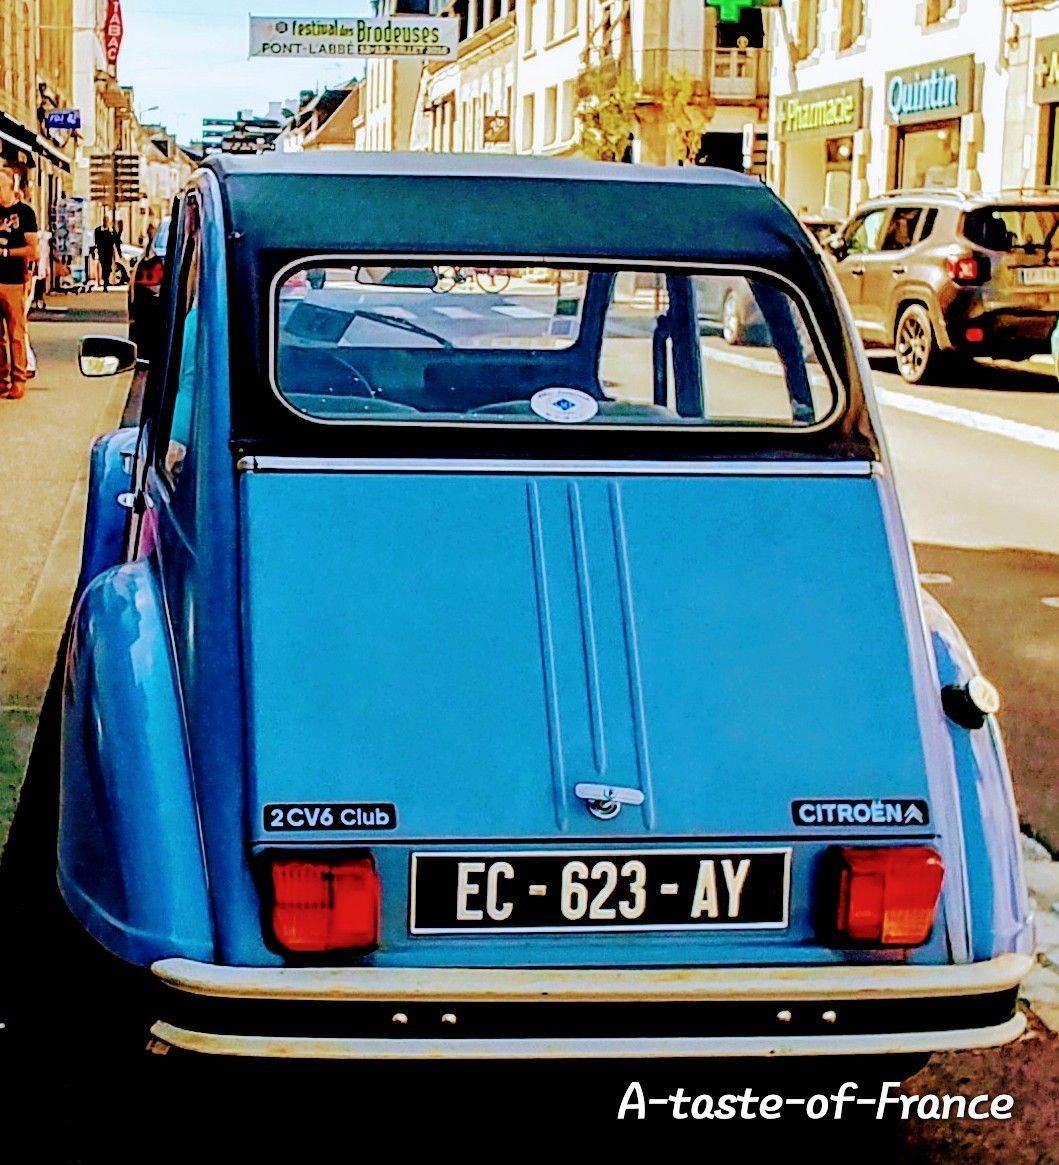 Citroën 2CV a classic #Frenchcar #France 🇨🇵 #travel #photo #2cv buff.ly/4djXsXq